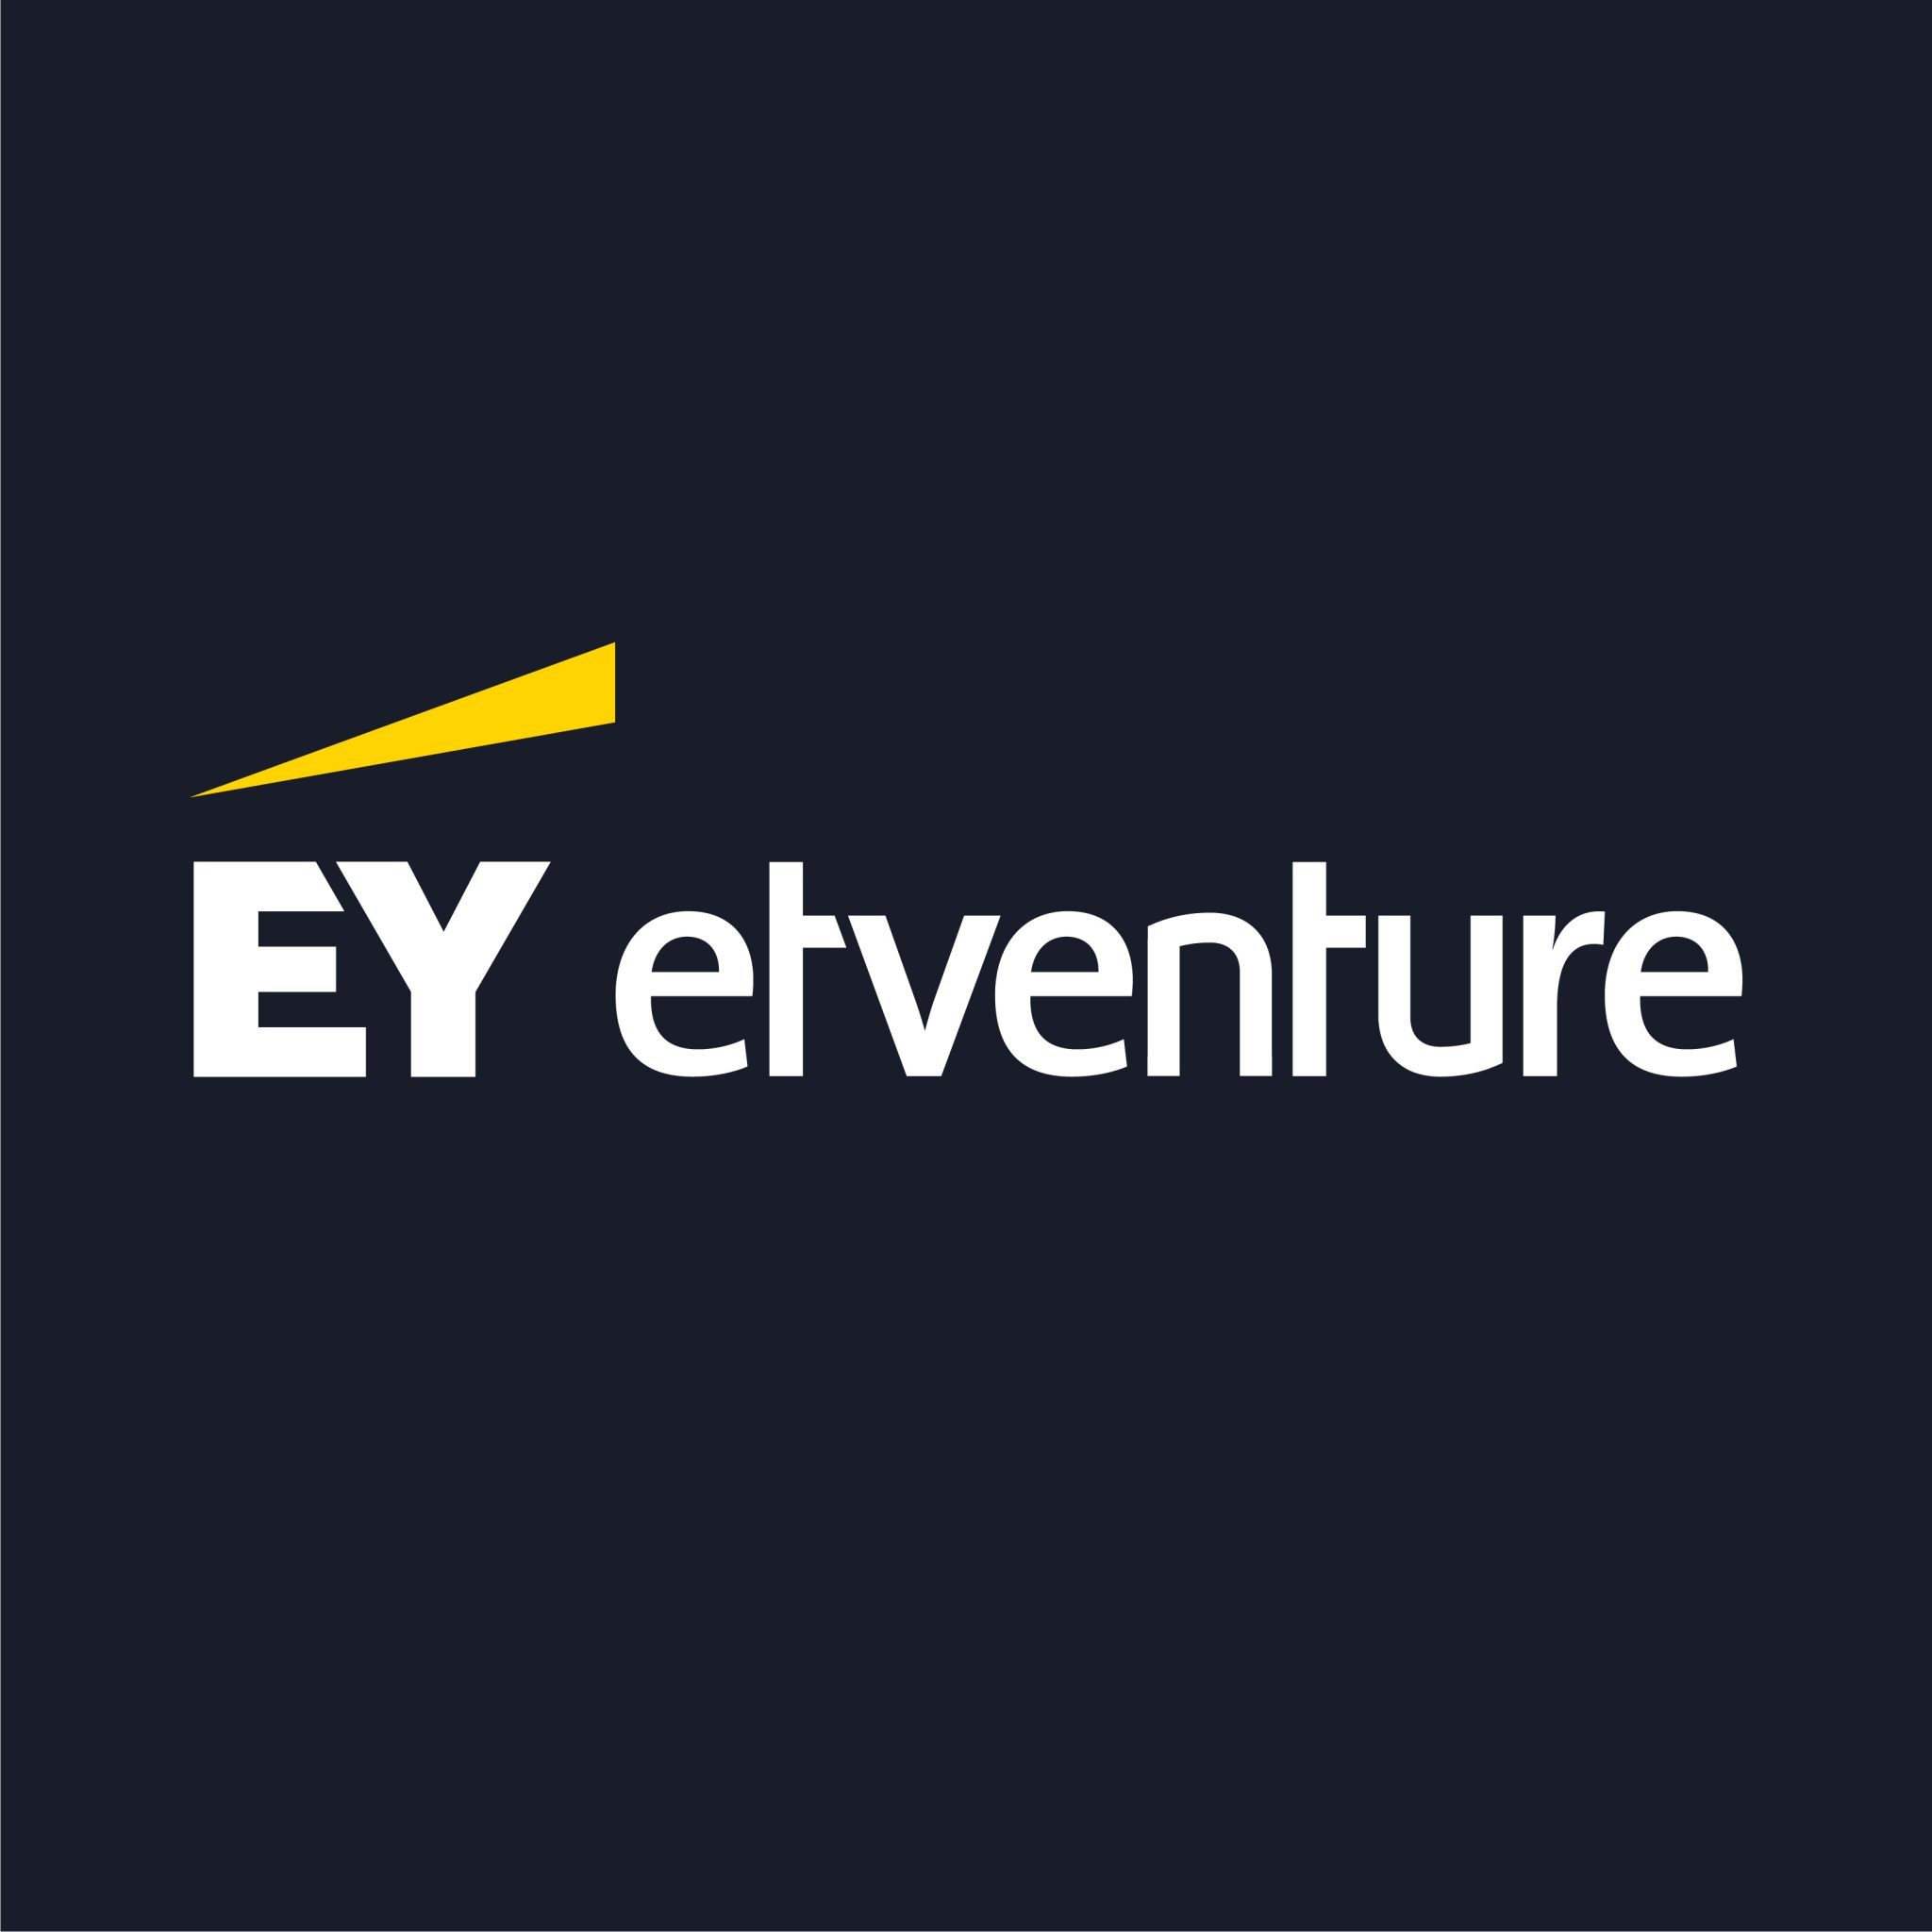 etventure's logo